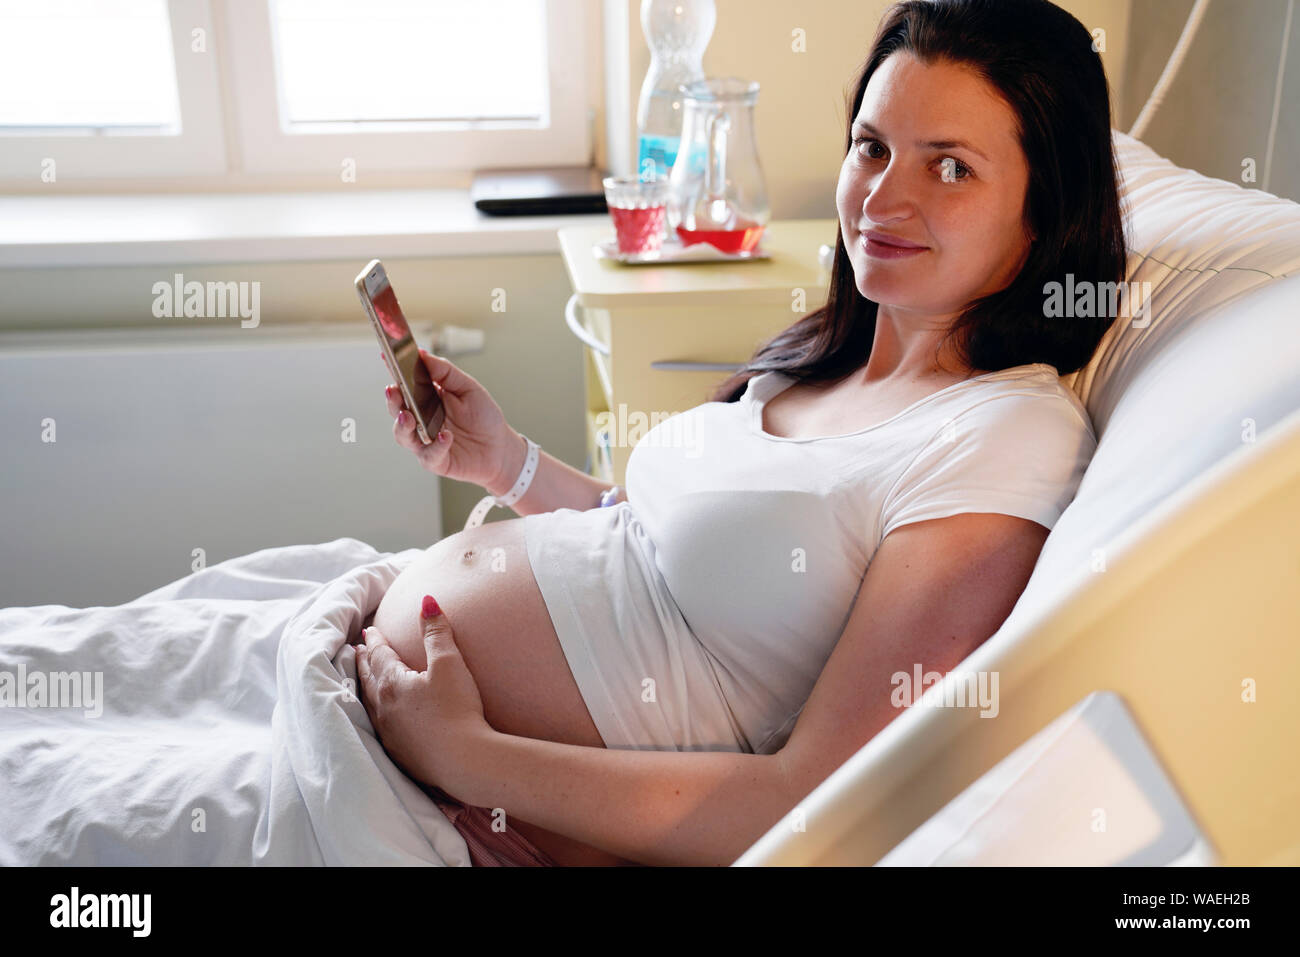 Rischio di gravidanza, donna incinta si trova in ospedale e rende selfie, Carlsbad, Repubblica Ceca, Europa Foto Stock